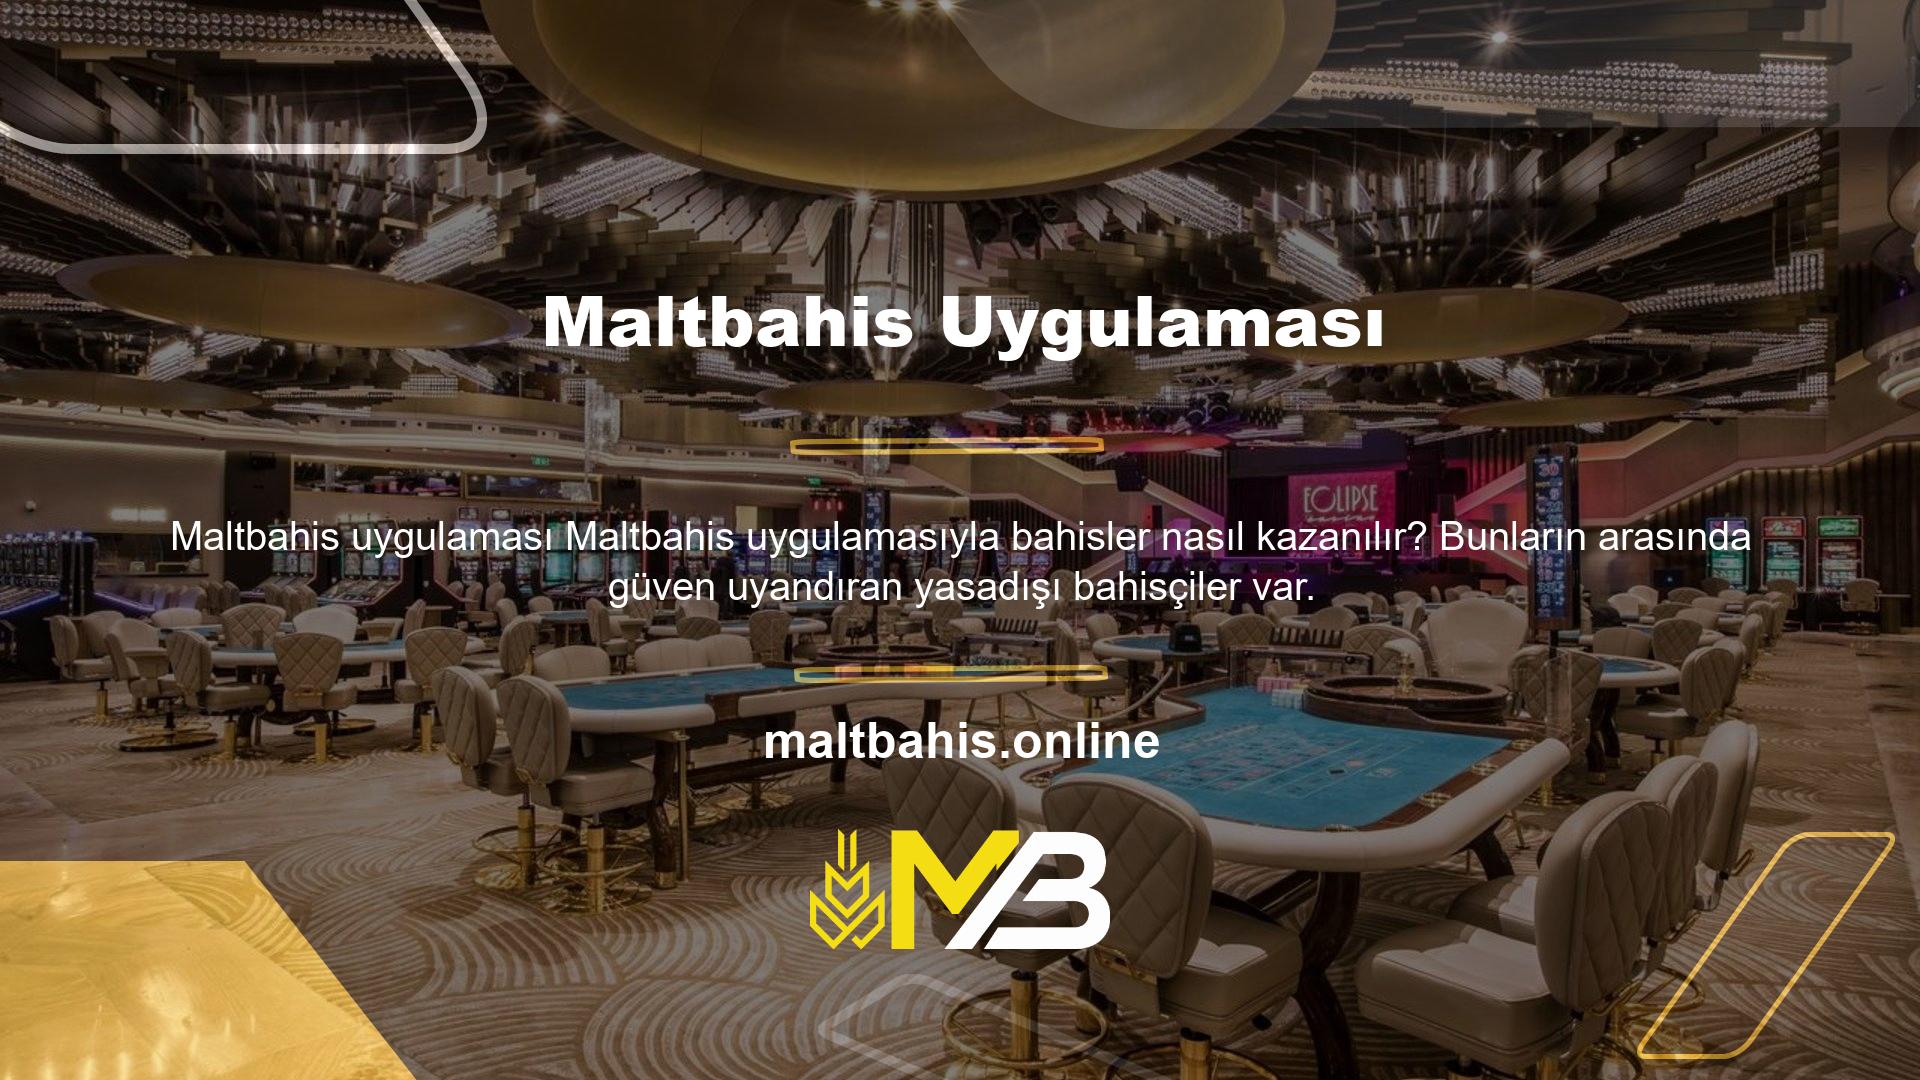 Maltbahis, Türk casino oyunlarına ilgi duyanların en çok aradığı ve tercih ettiği bahis şirketlerinden biridir